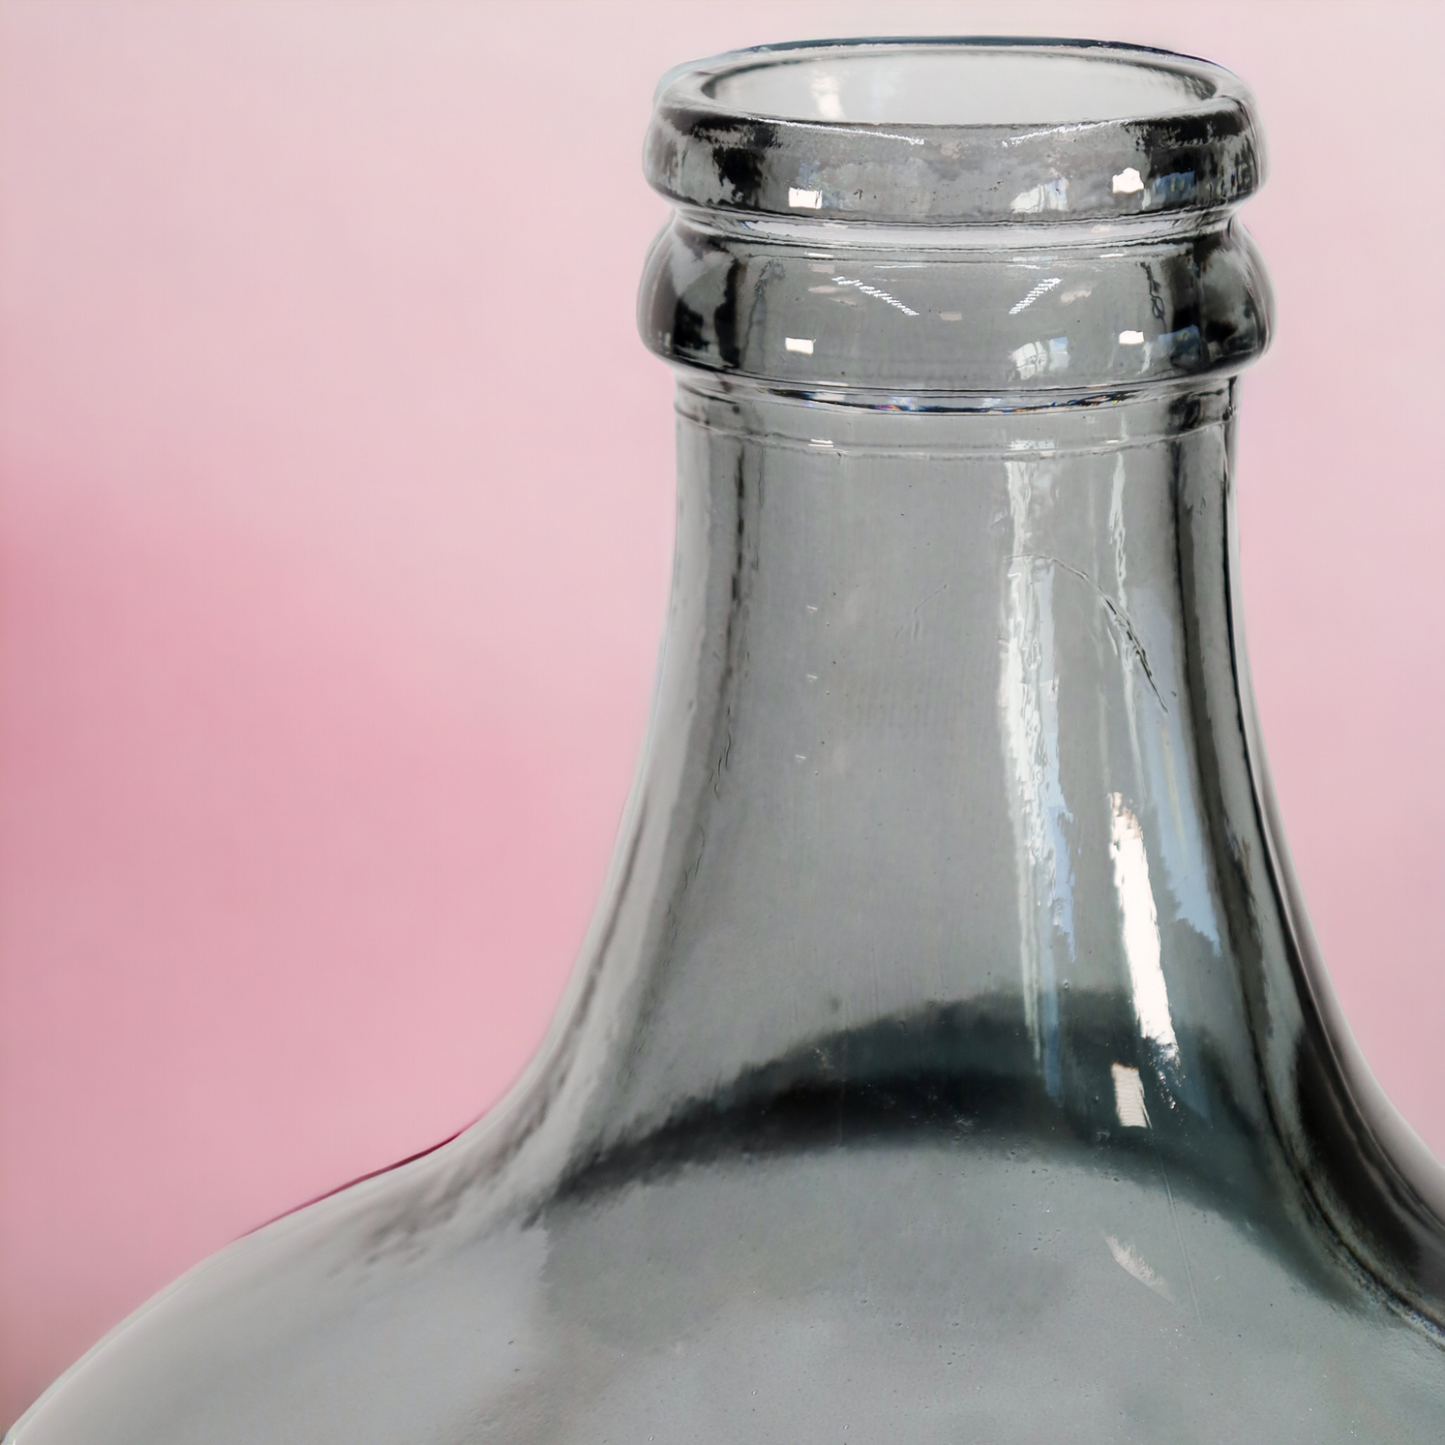 Vase - Flaschenkaraffe "Botella" dark grey - 42 cm